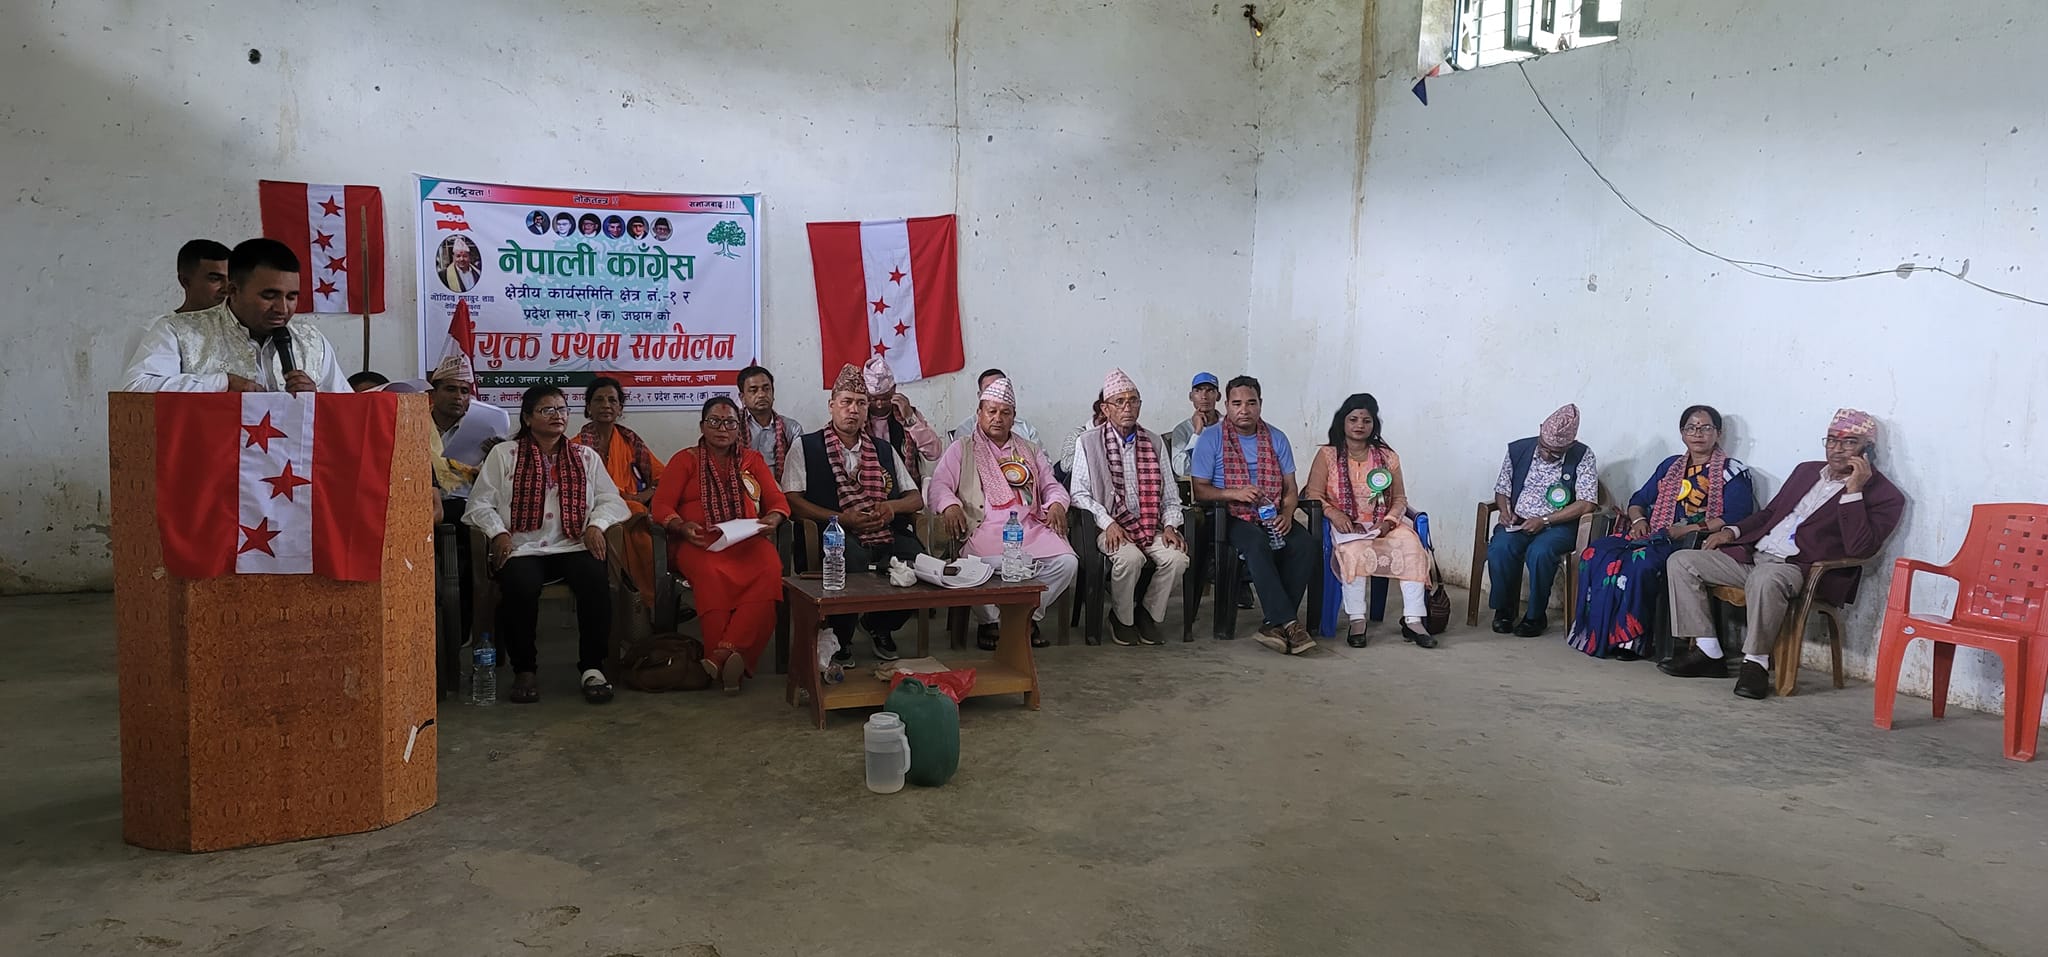 नेपाली कांग्रेसको प्रथम संयुक्त सम्मेलन साफेबगरमा सम्पन्न